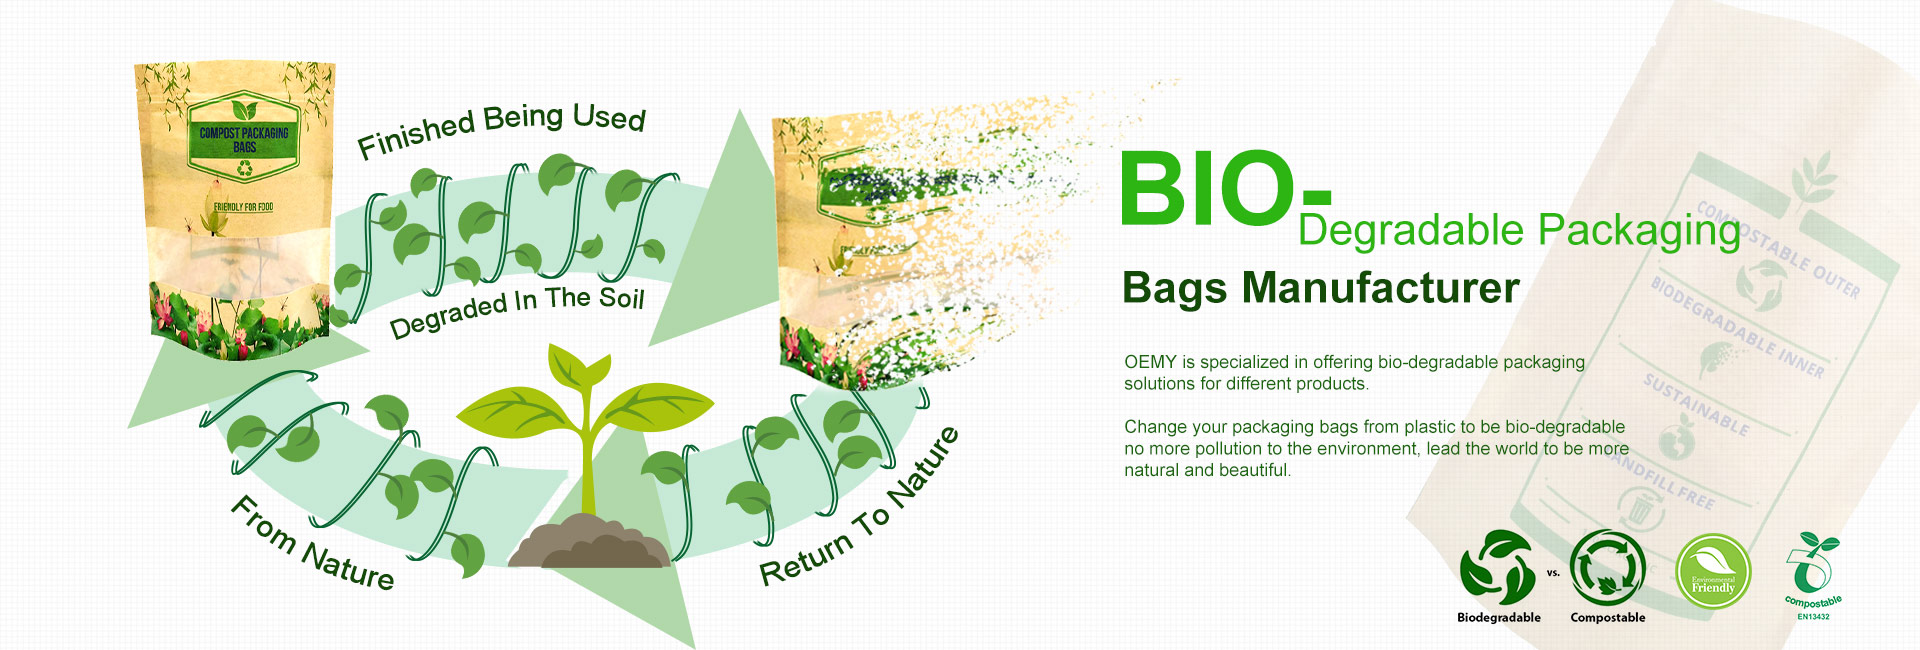 Imballaggio biodegradabile